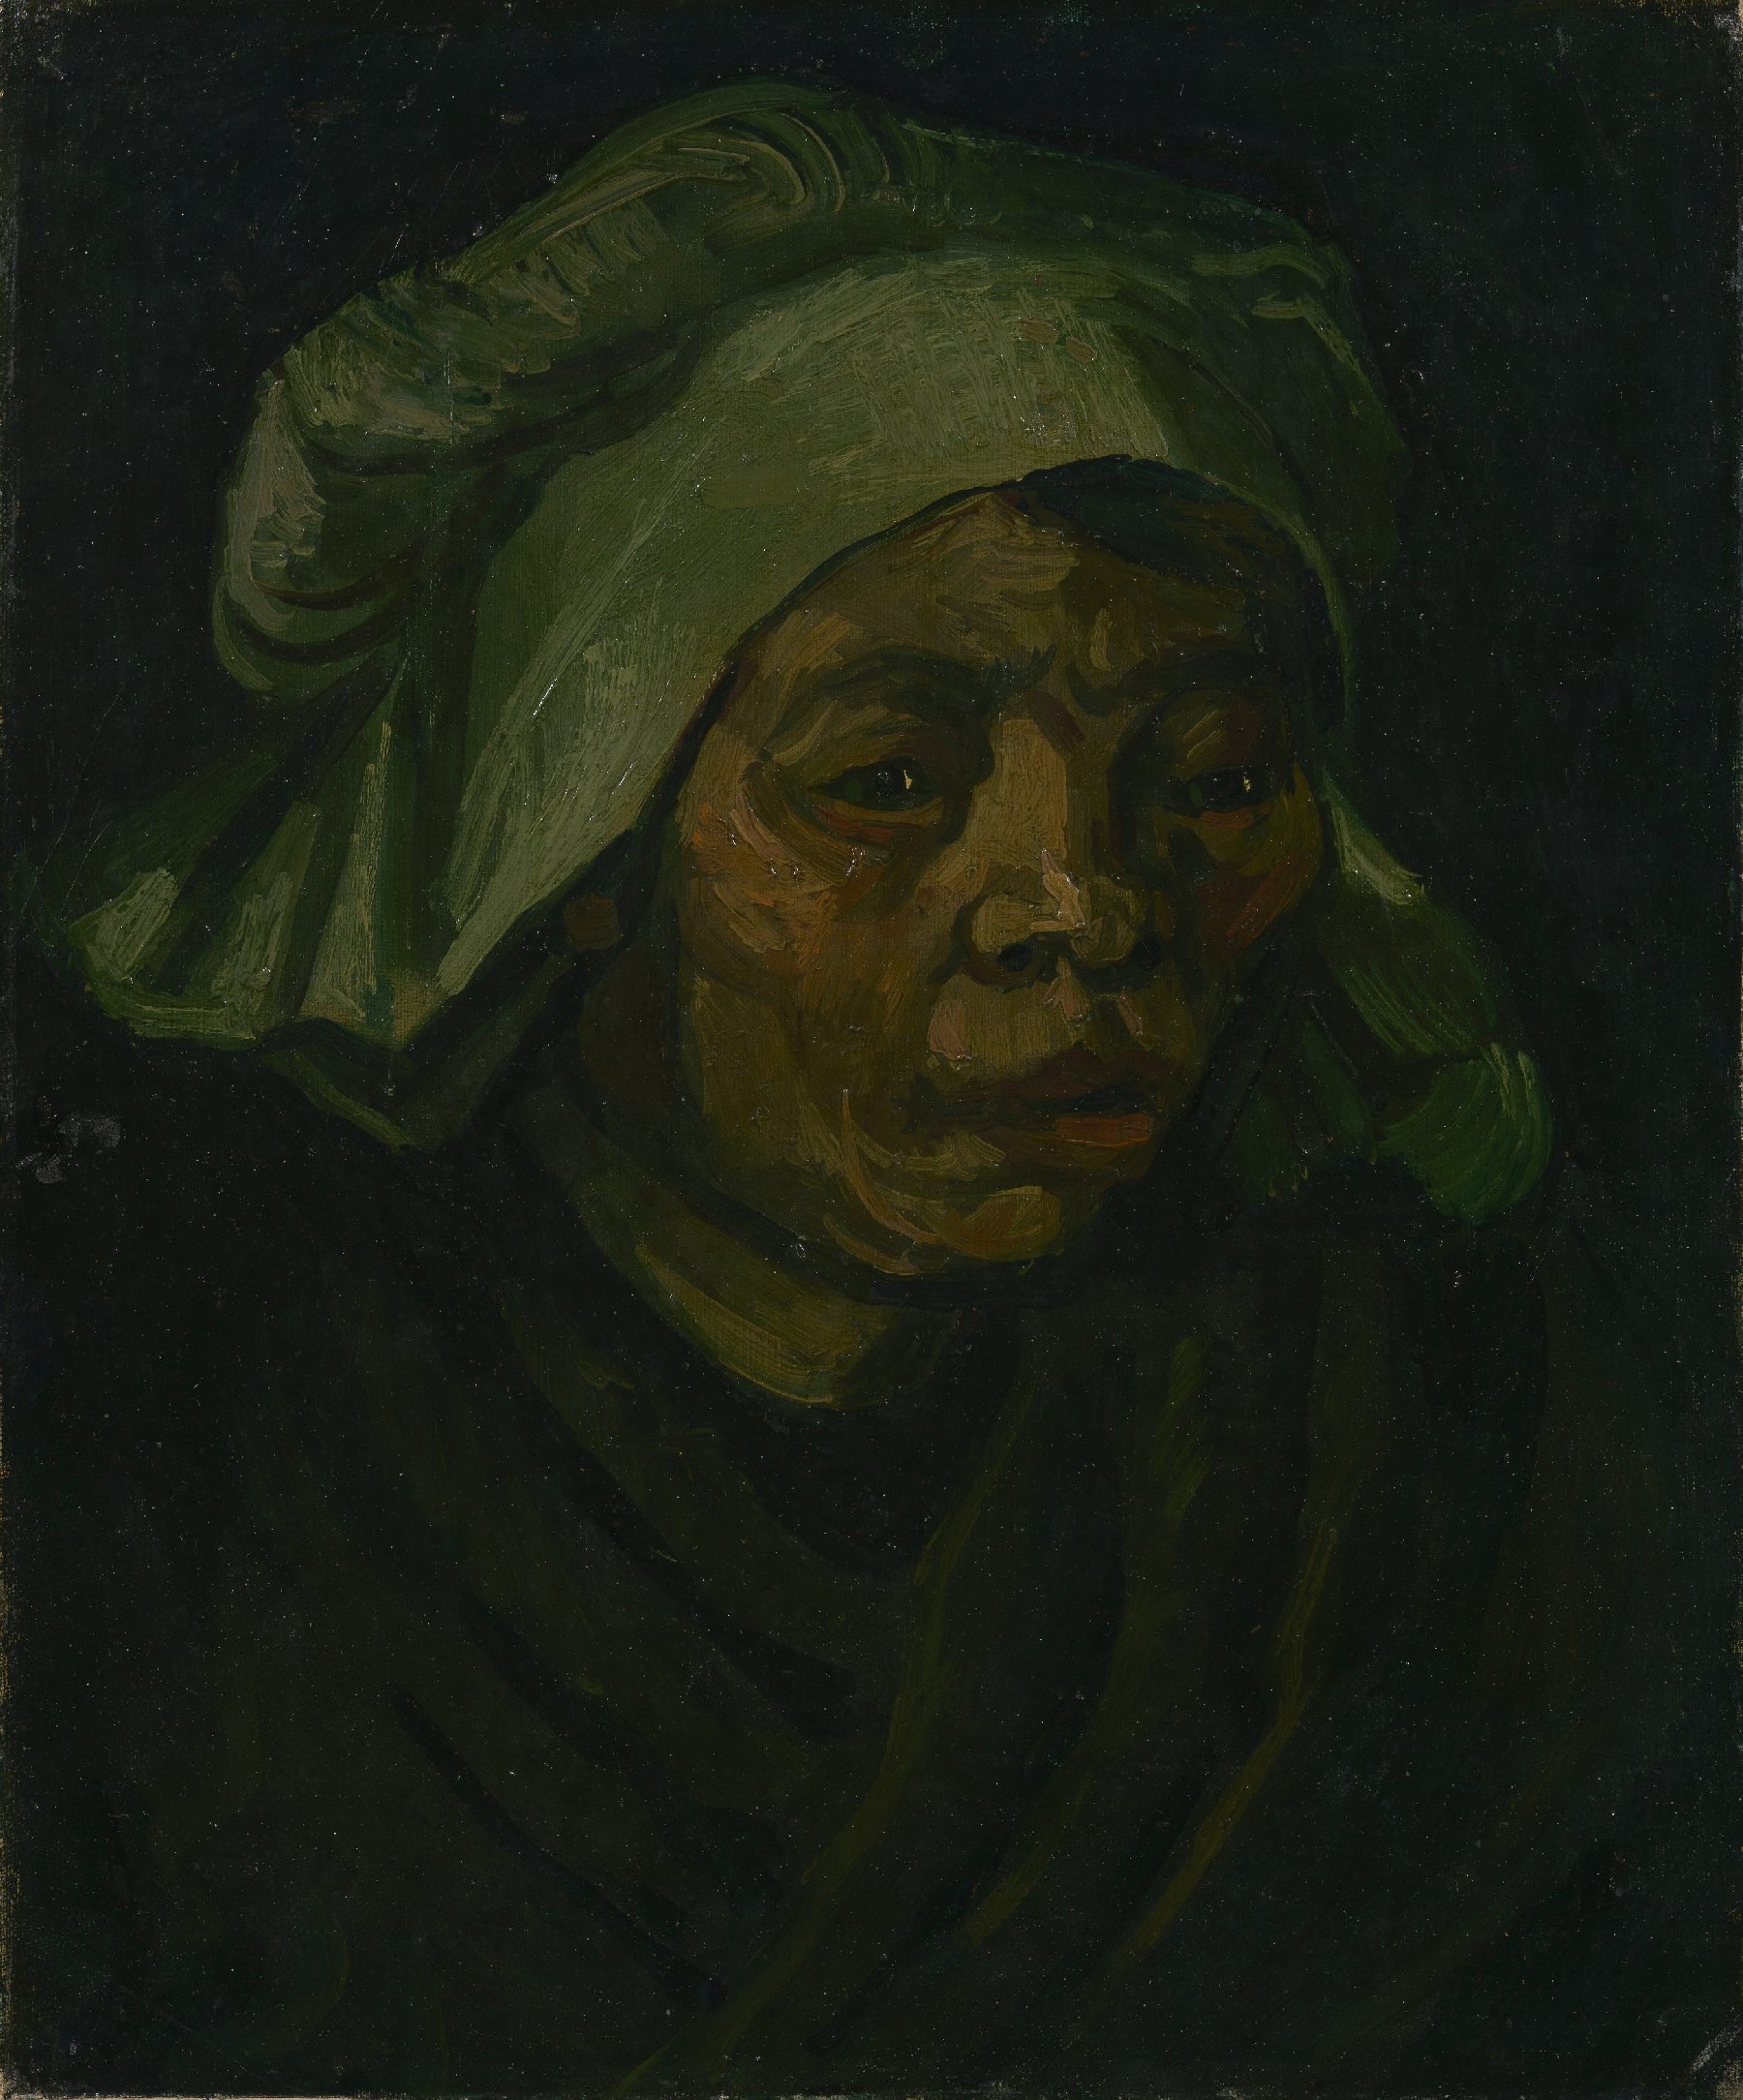 Kop van een vrouw Vincent van Gogh (1853 - 1890), Nuenen, maart 1885